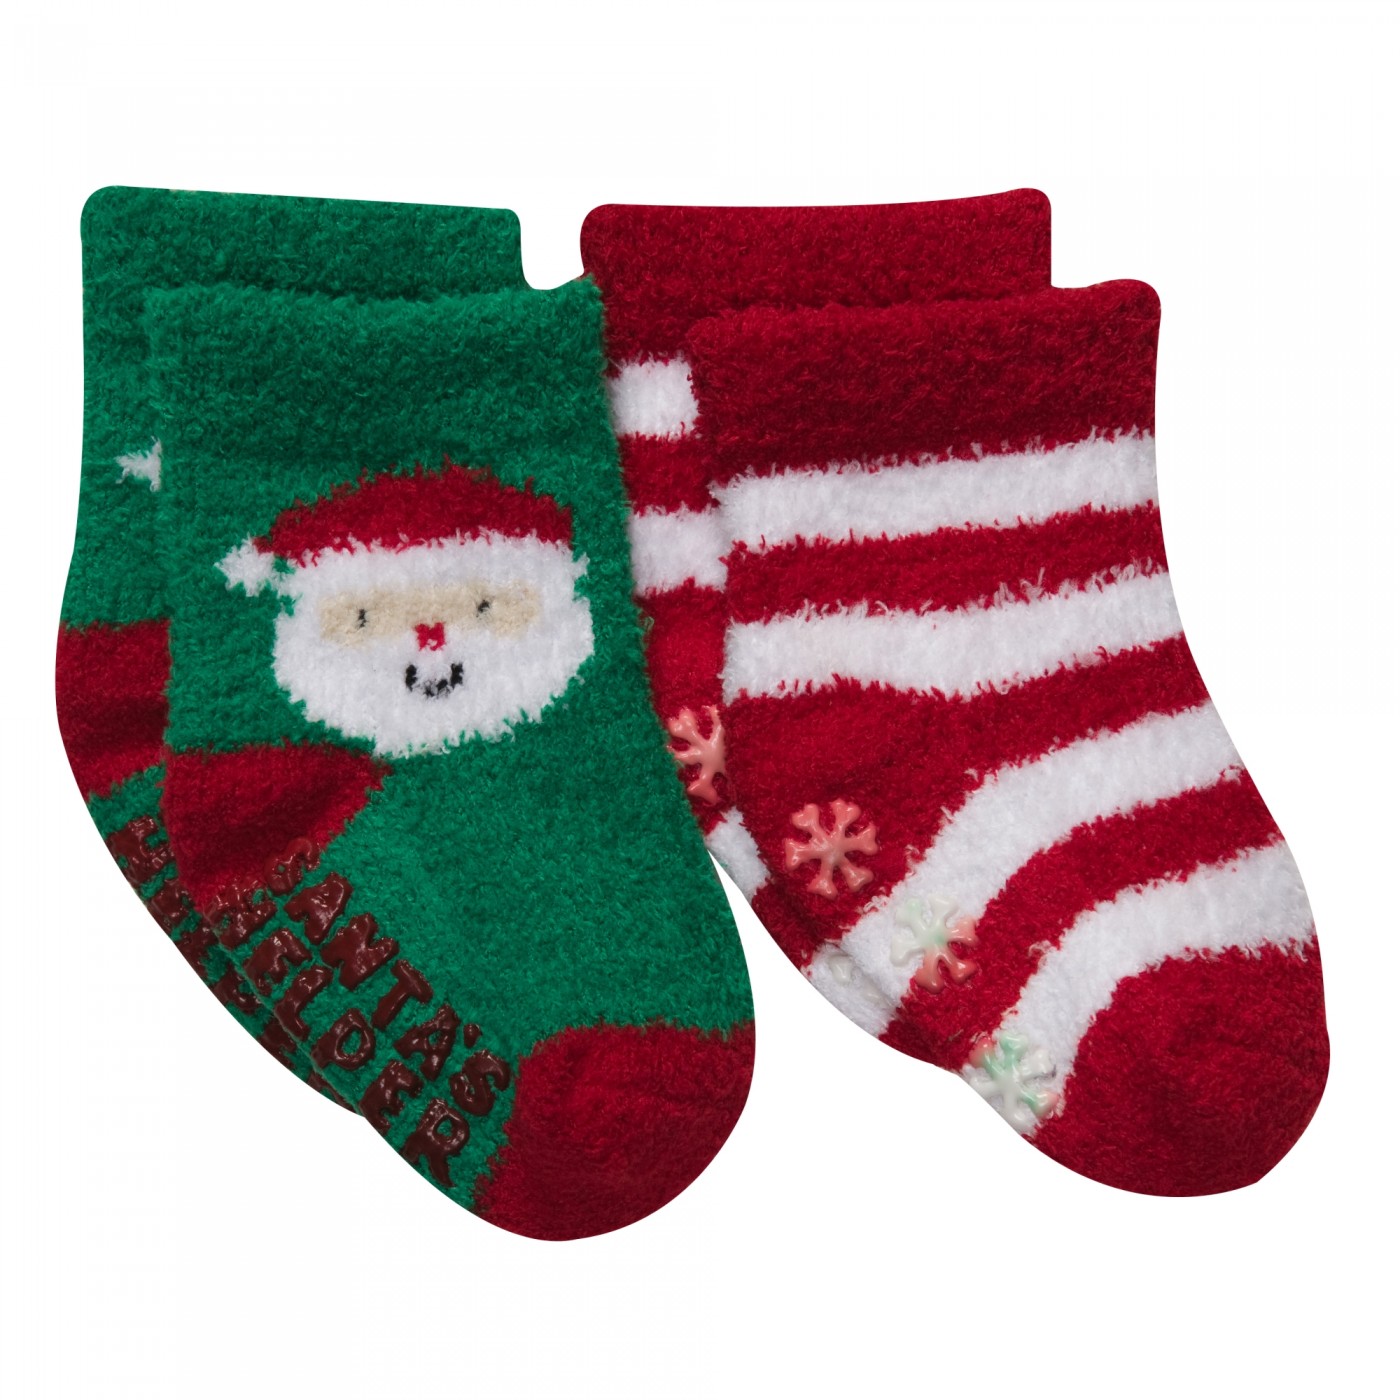 聖誕節雪呢絨襪子兩件組